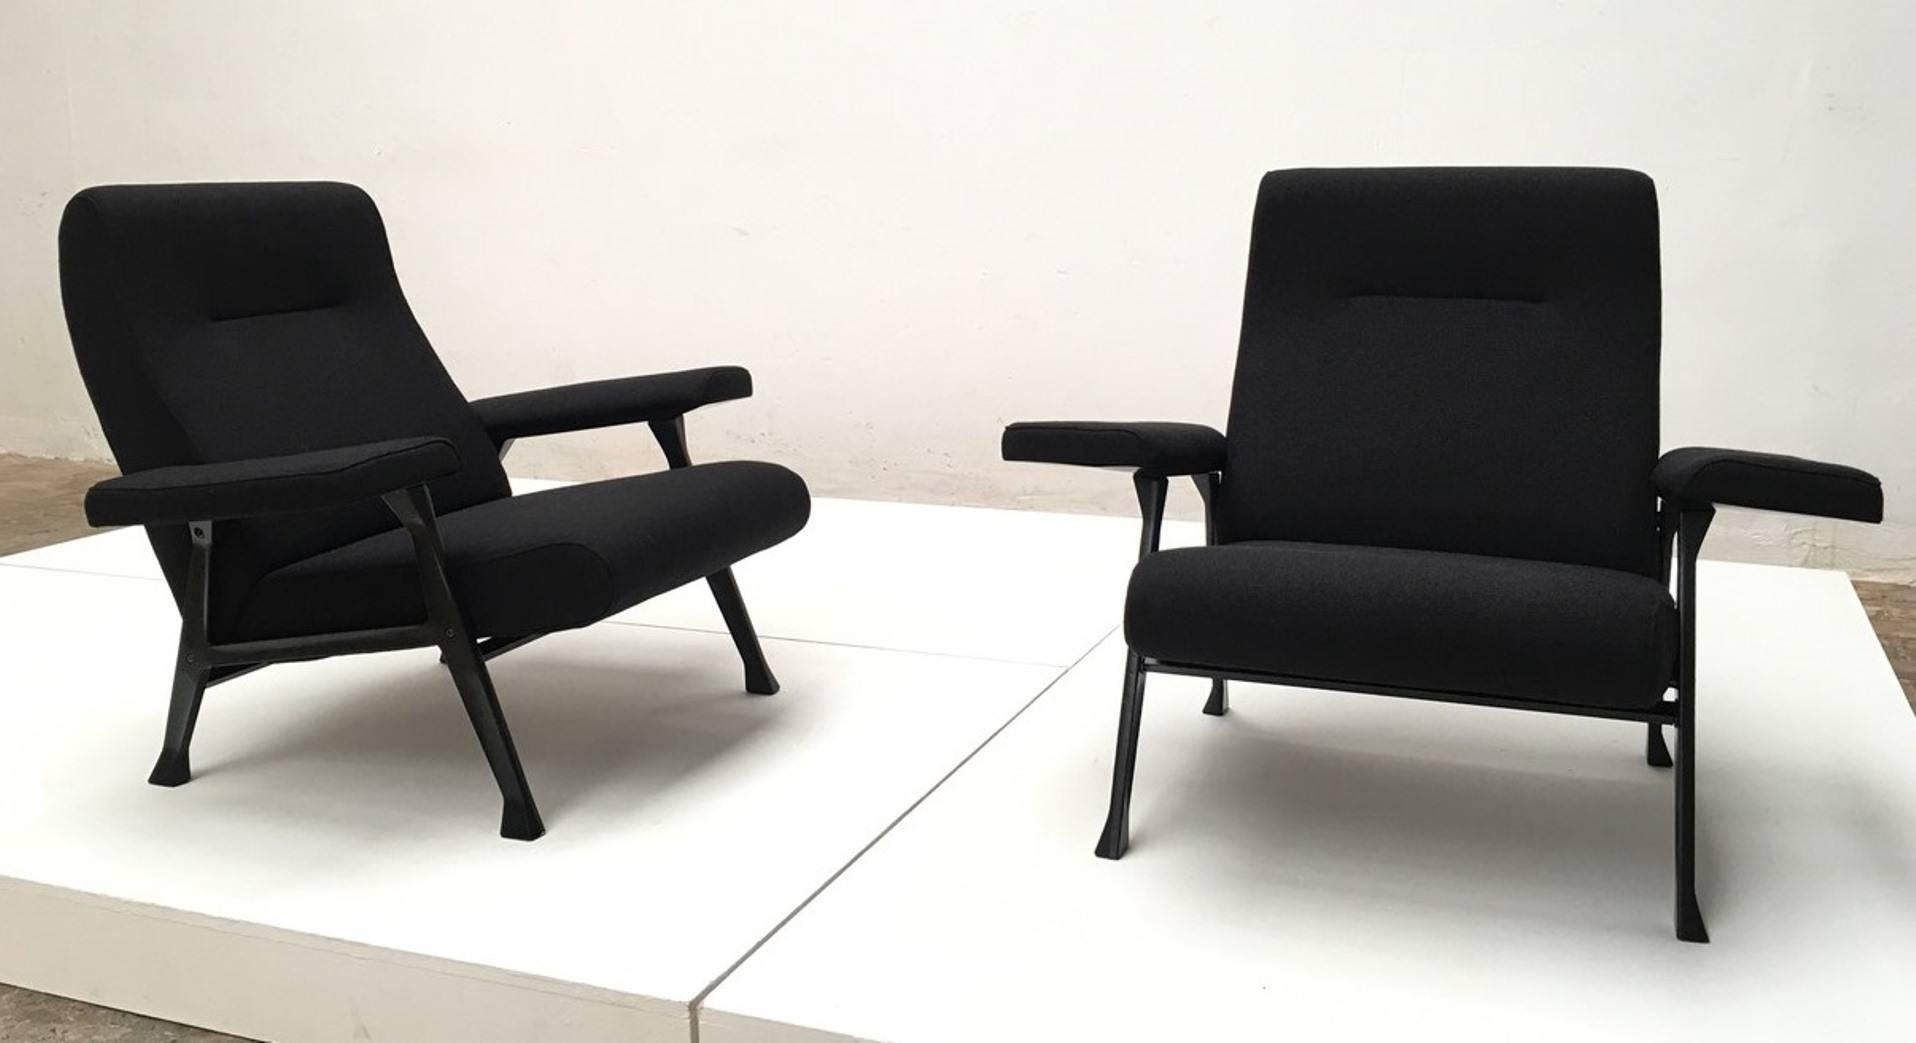 Cast Rare Roberto Menghi 'Hall' Lounge Chairs, Arflex , 1958, 'Compasso D'oro', 1959